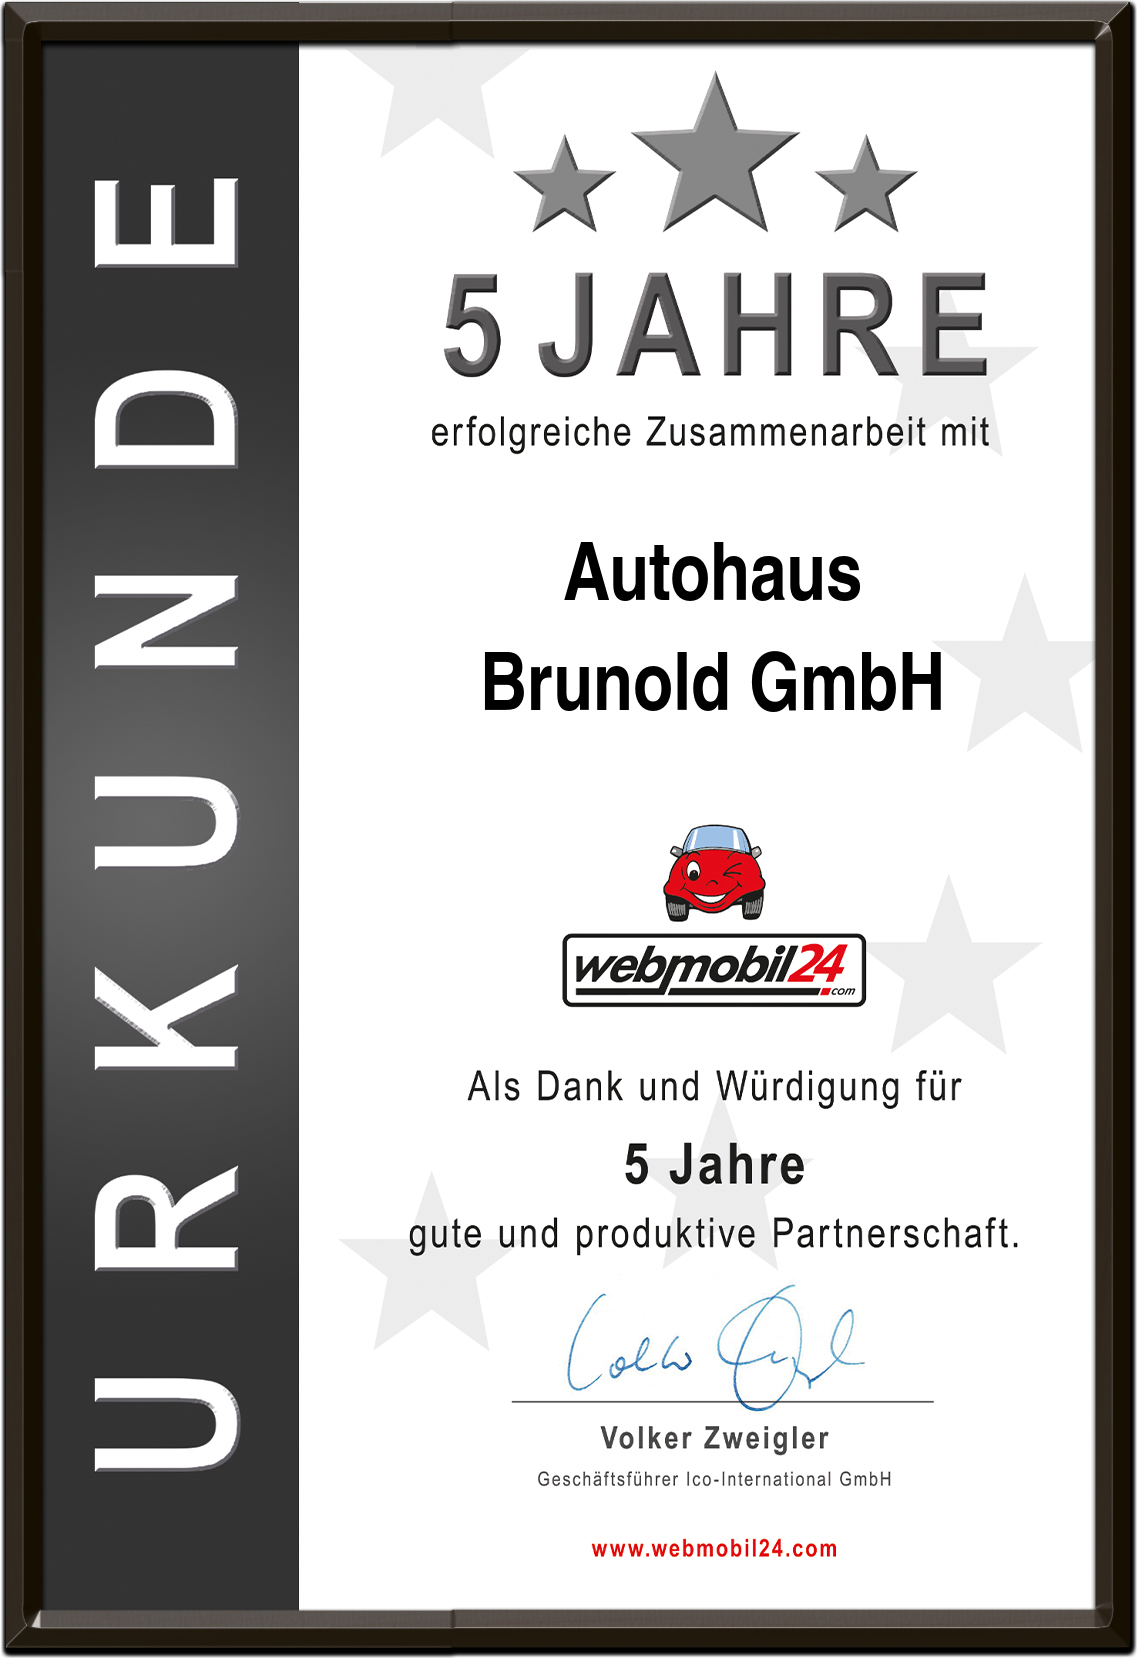 AutohausBrunold GmbH